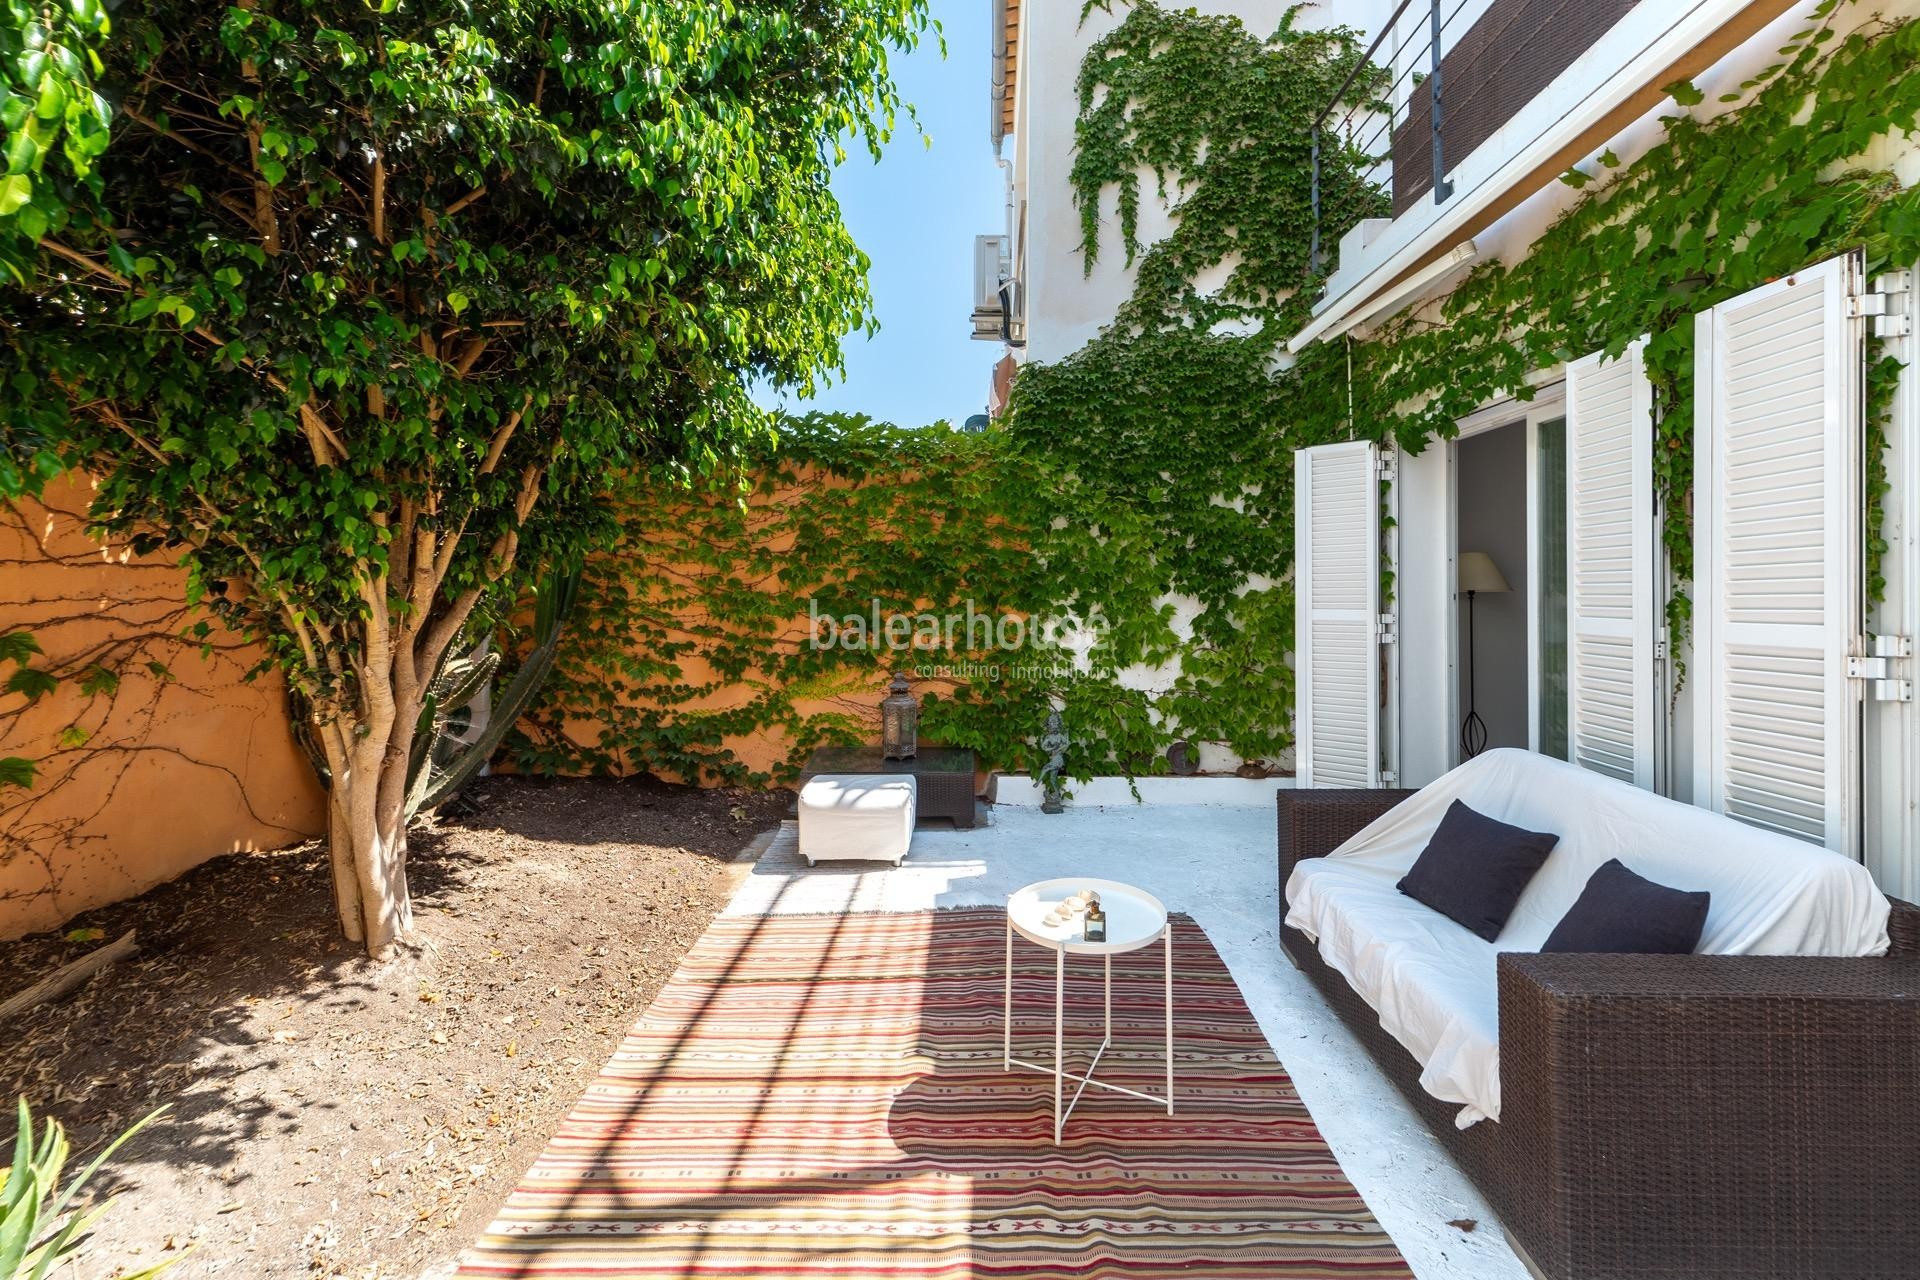 Amplia y luminosa casa con excelentes terrazas en una céntrica y tranquila zona de Palma